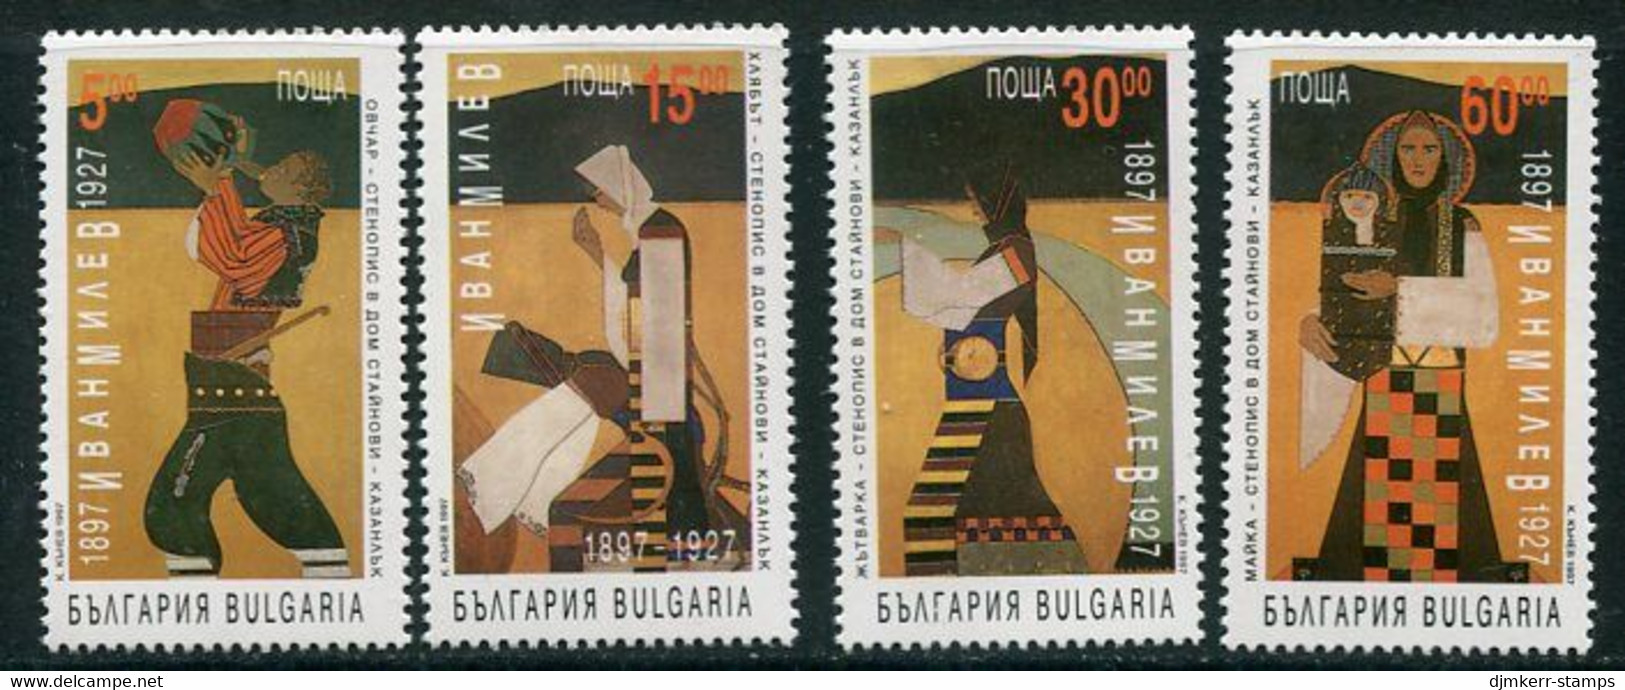 BULGARIA 1997 Milev Centenary MNH / **.  Michel 4270-73 - Nuevos